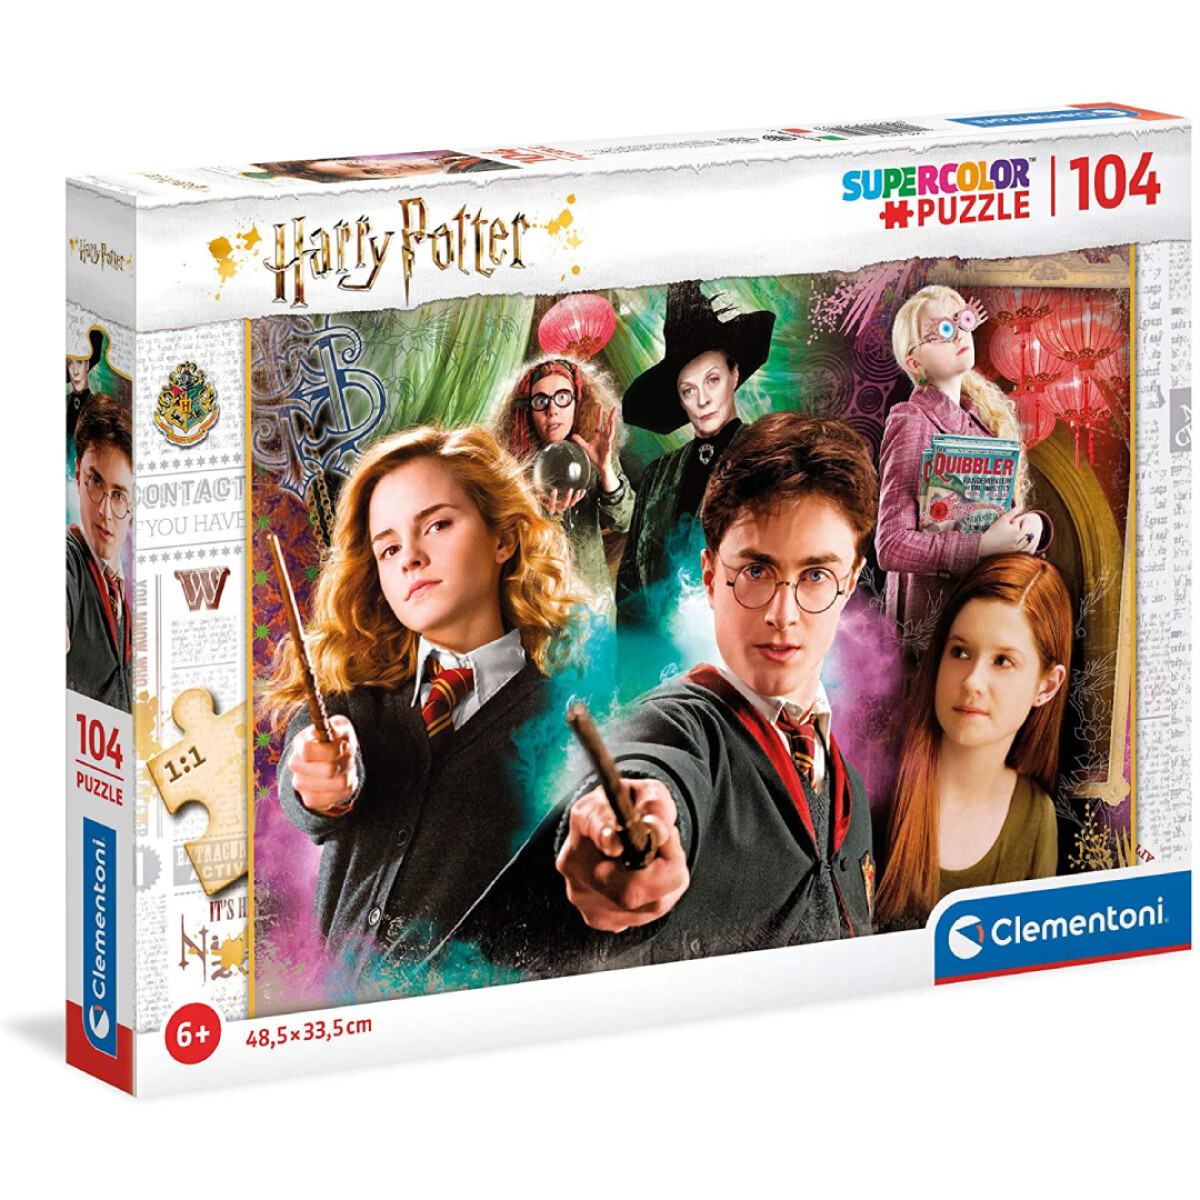 Puzzle Clementoni Harry Potter 104 Piezas - 001 